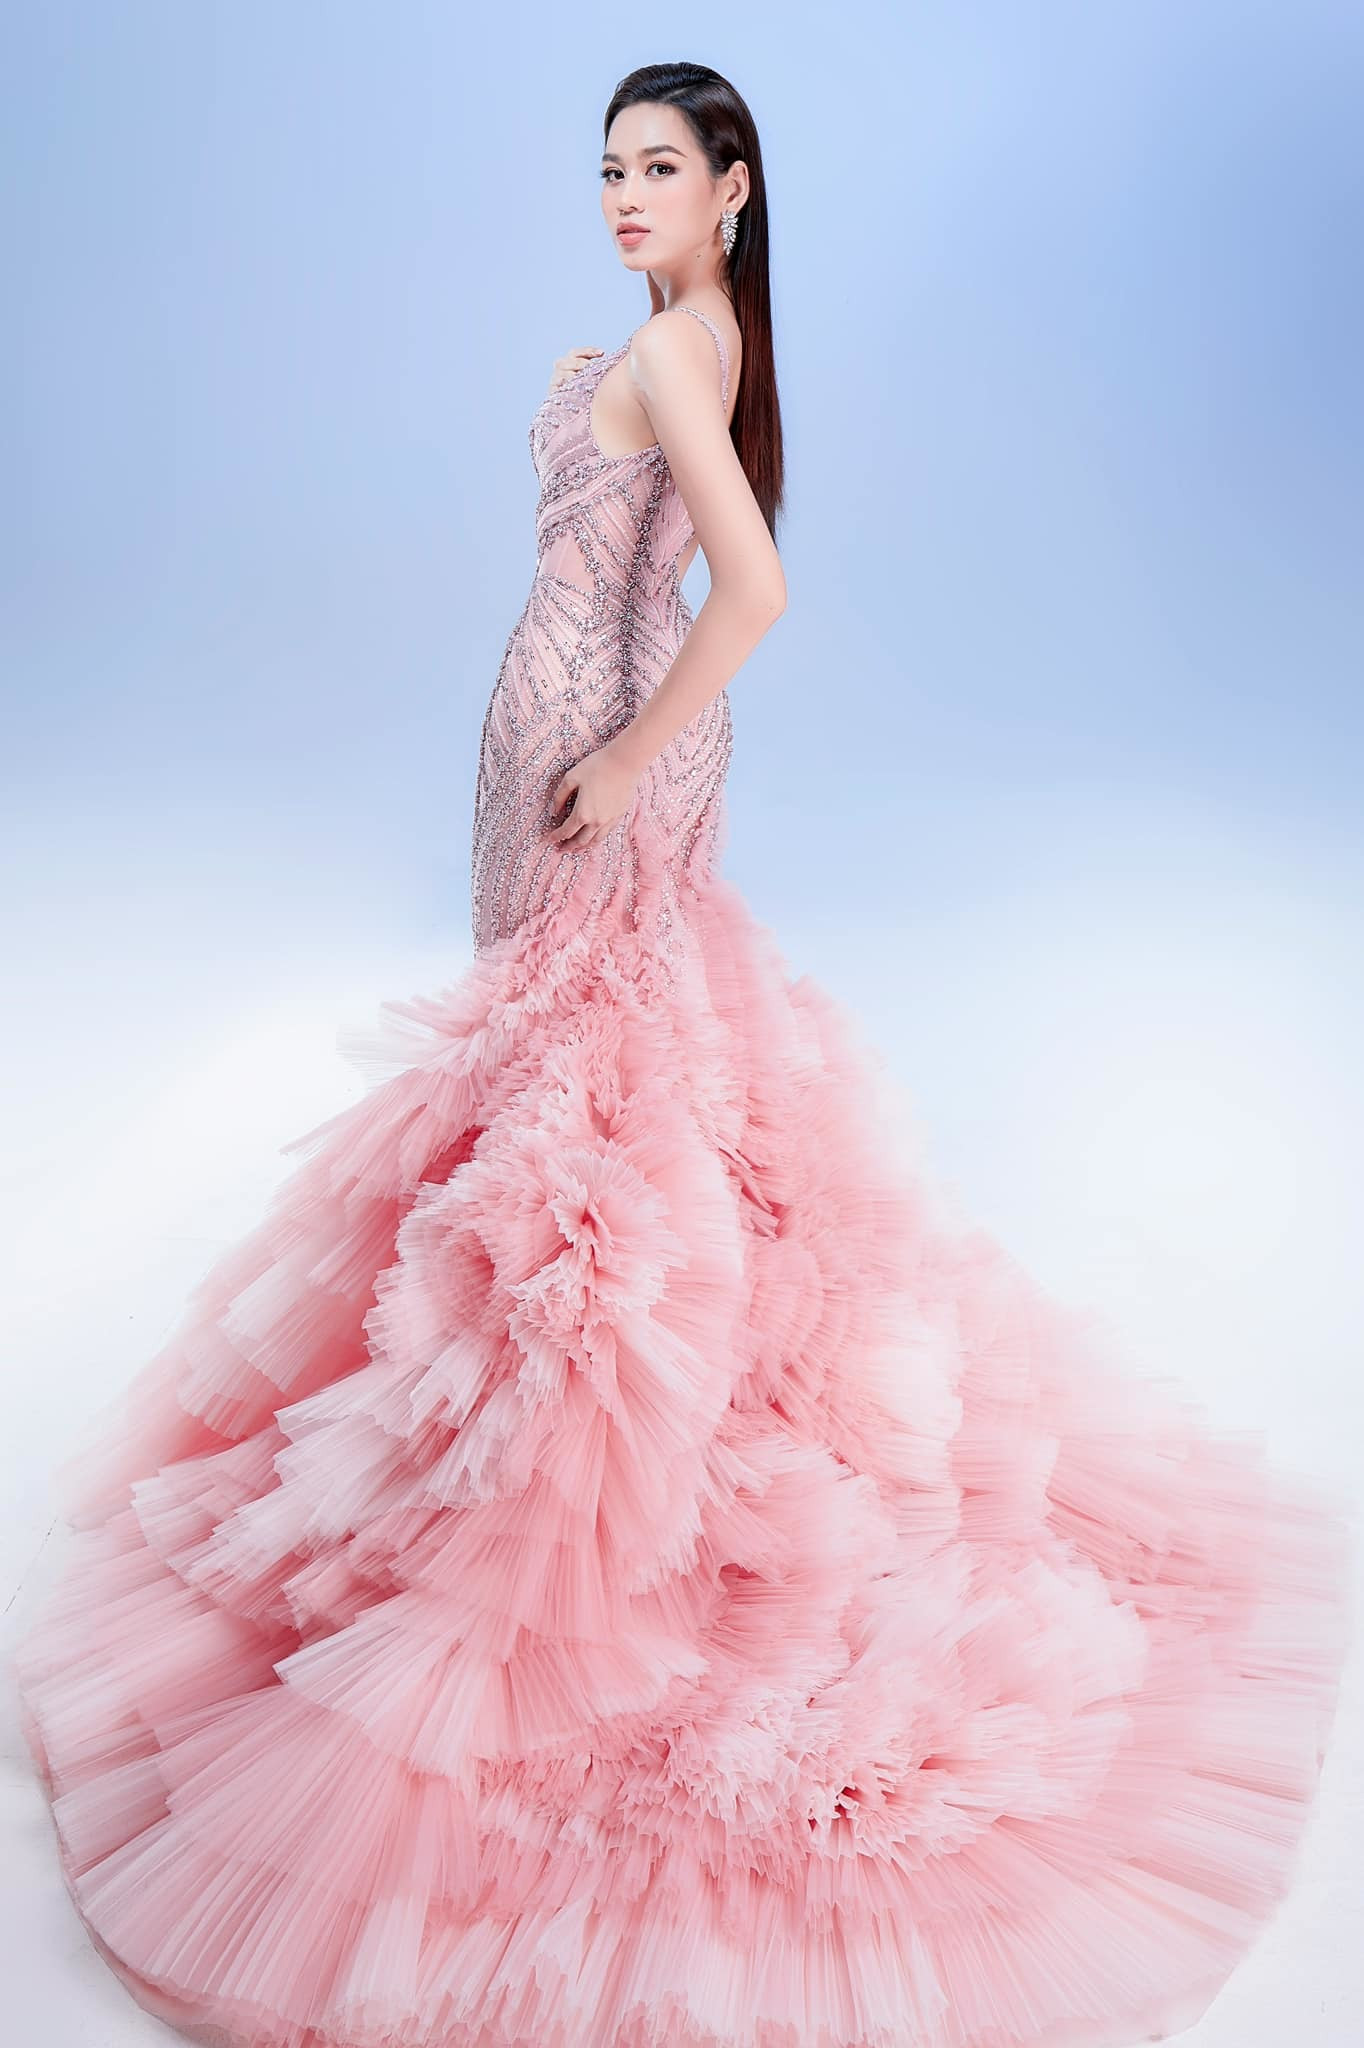 Đêm chung kết Hoa hậu Thế giới đã diễn ra hôm nay (ngày 17/3 theo giờ Việt Nam). Trong ảnh là cận cảnh chiếc váy có màu hồng pastel ngọt ngào mà Đỗ Thị Hà diện trong đêm chung kết.